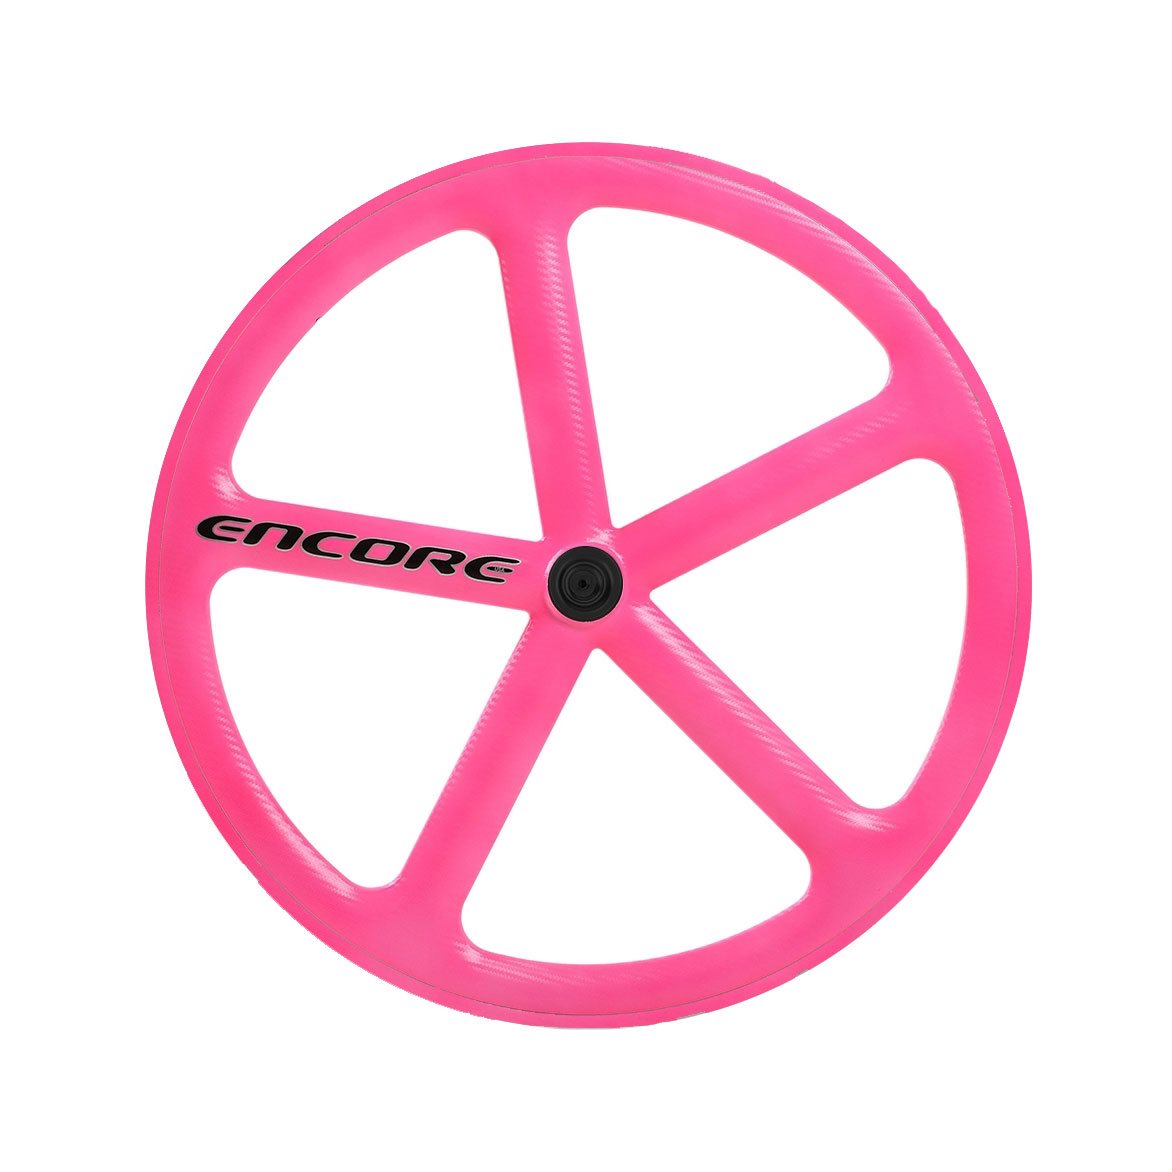 roda traseira 700c track 5 raios fibra de carbono rosa neon nmsw